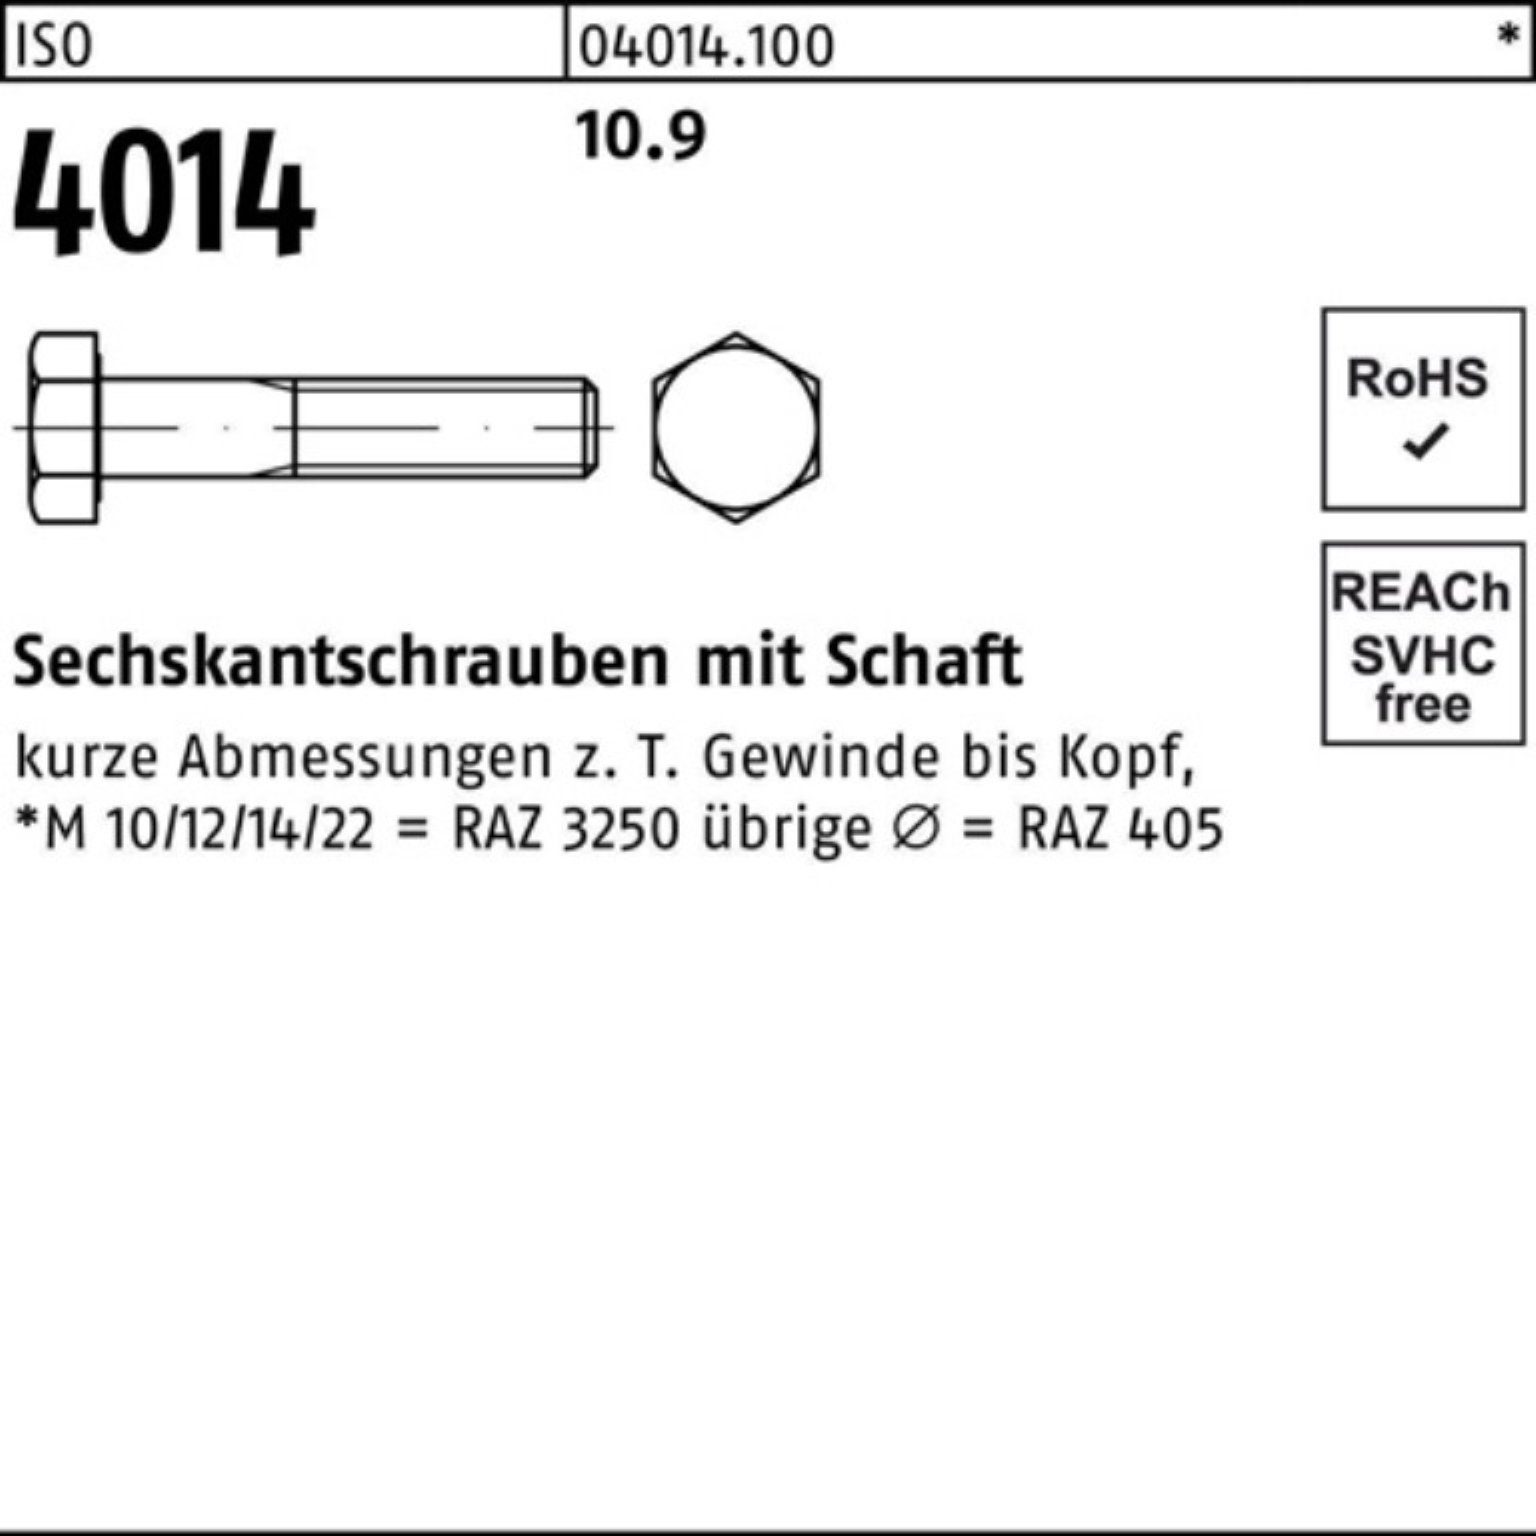 IS 4014 390 ISO Sechskantschraube Sechskantschraube Bufab Pack 1 100er Schaft M24x Stück 10.9